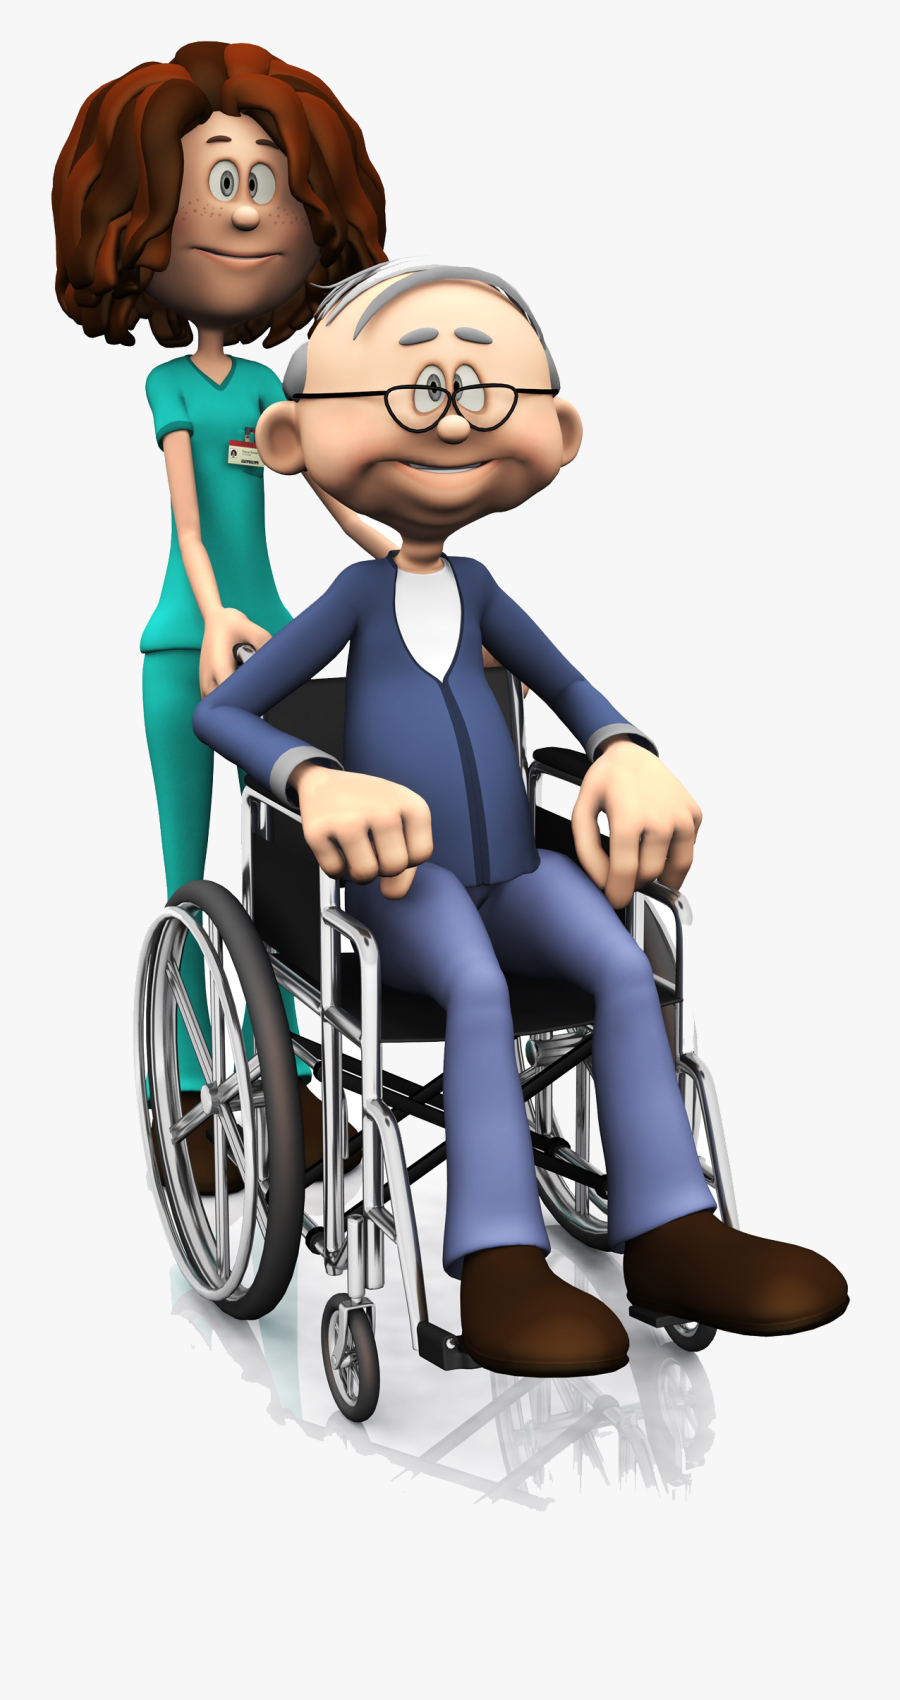 Injury Clipart Wheelchair - Idoso Em Cadeira De Rodas, Transparent Clipart